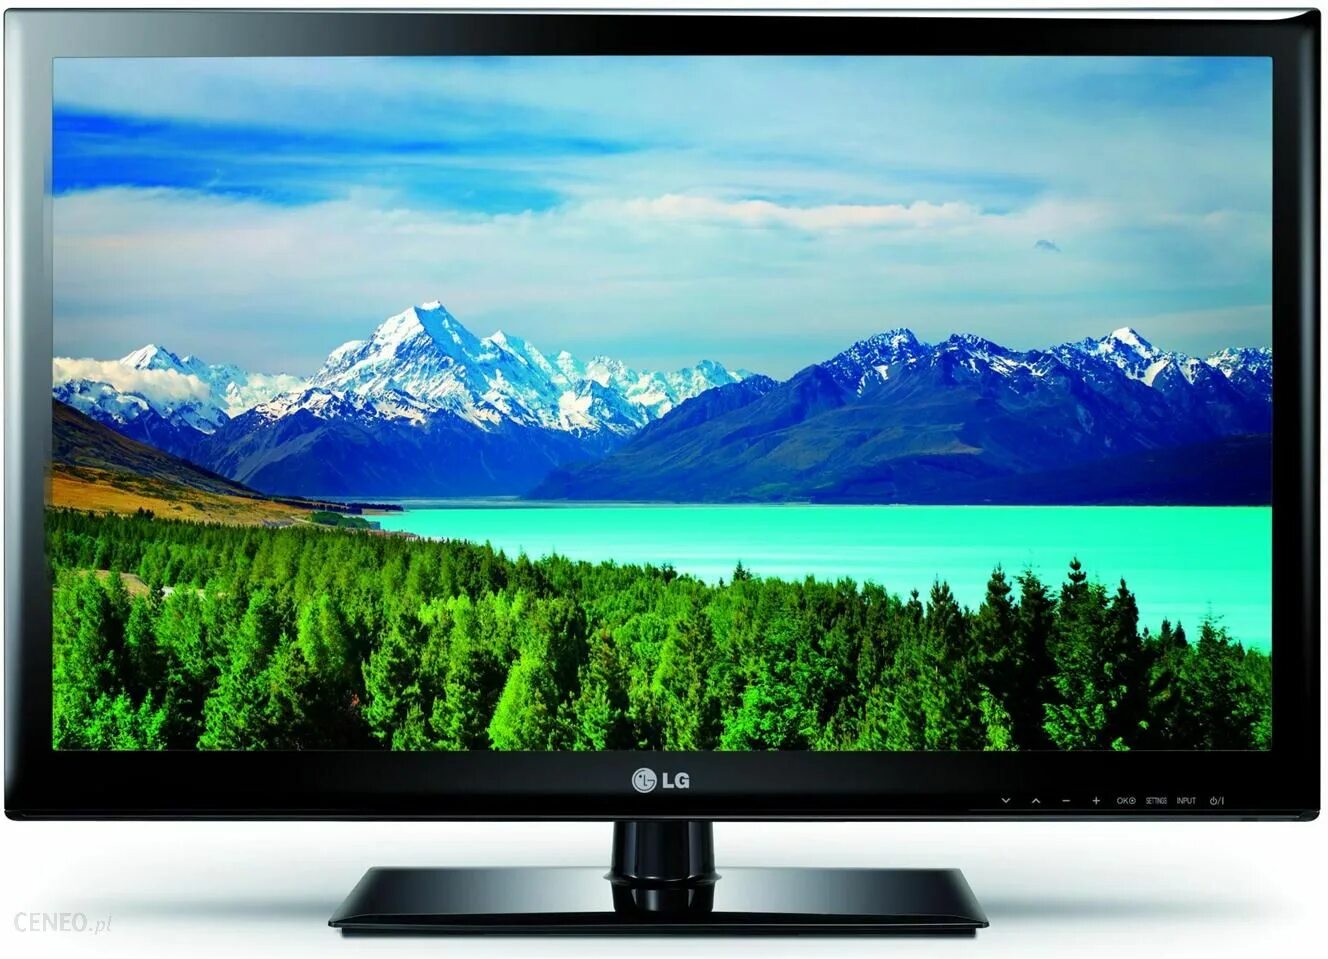 Купить телевизор 32 смарт тв в москве. Телевизор ЛГ 32 дюйма. LG 32lh519u. Телевизор LG 26 дюймов. LG 32ls3400.